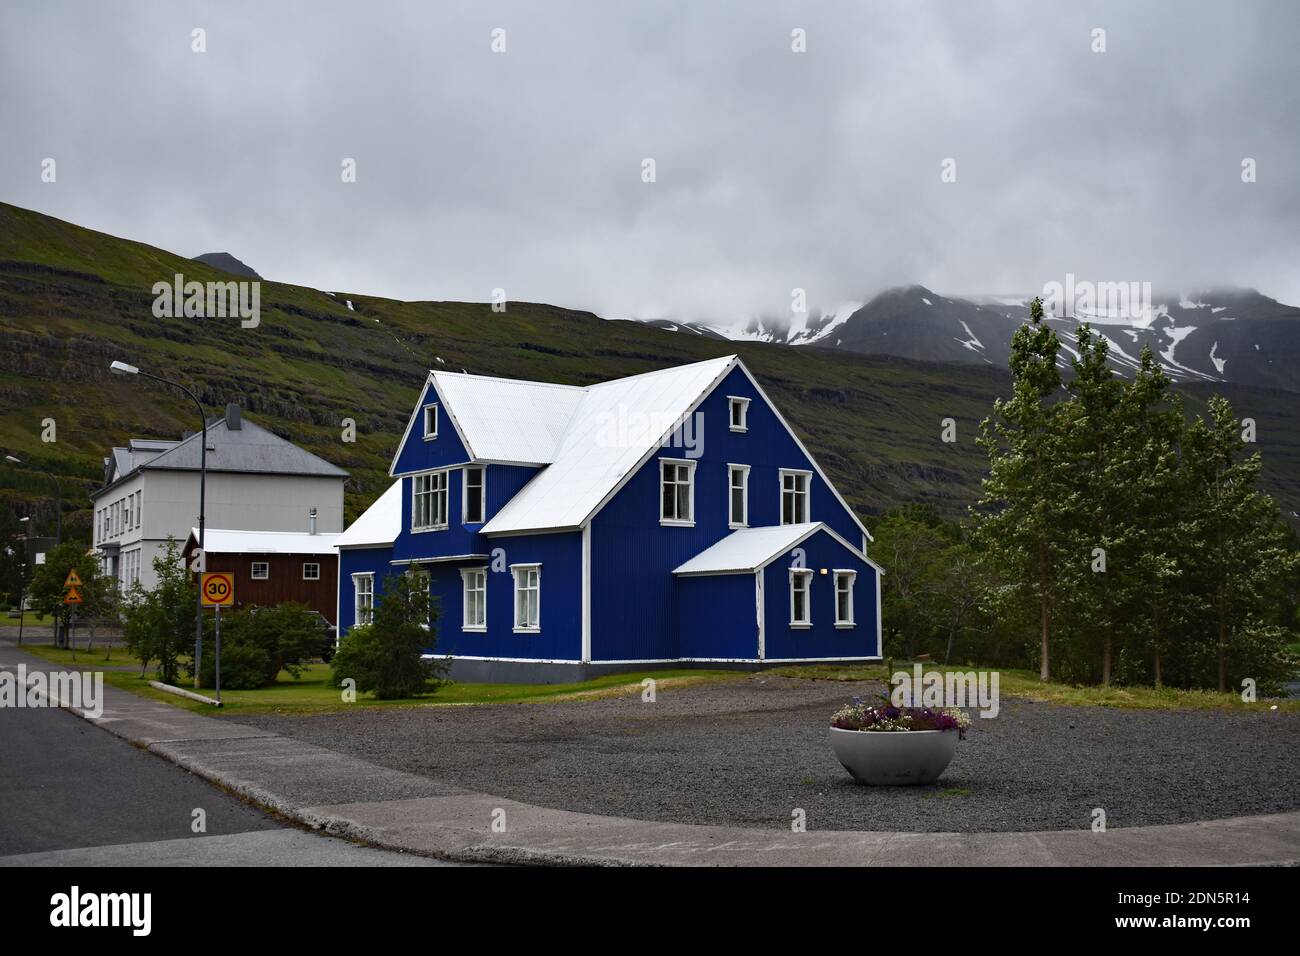 Ein helles blau-weißes Gebäude in der kleinen Stadt Seydisfjordur in der Region Eastfjords in Island. Schneebedeckte Berge verschwinden in den Wolken. Stockfoto